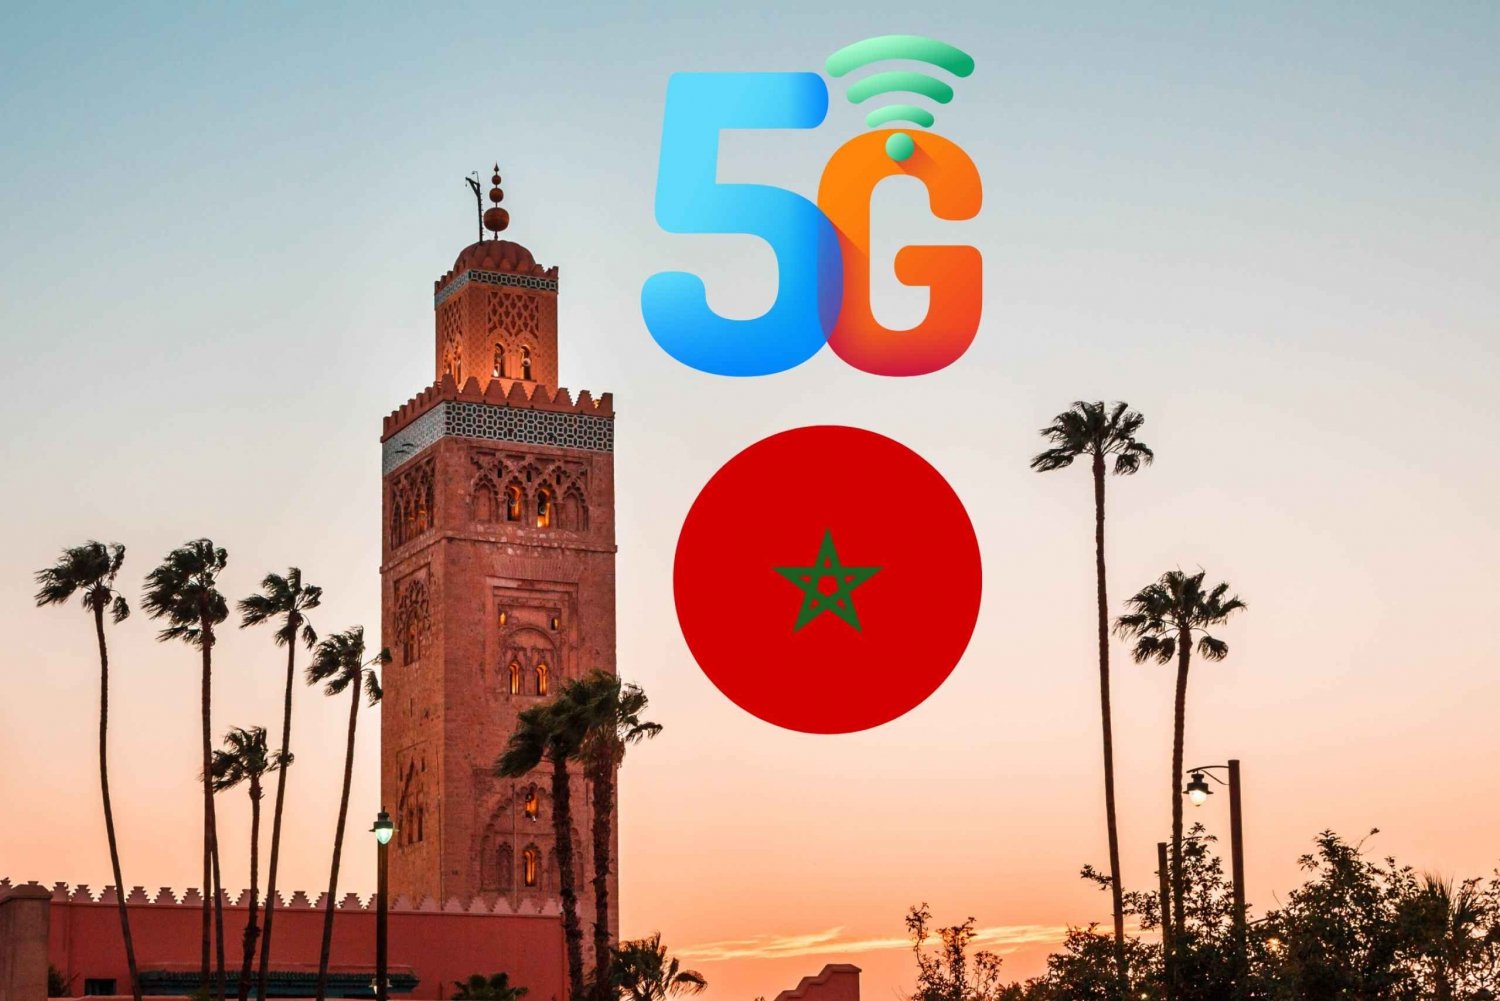 Maroko: Prepaid eSIM z mobilną transmisją danych